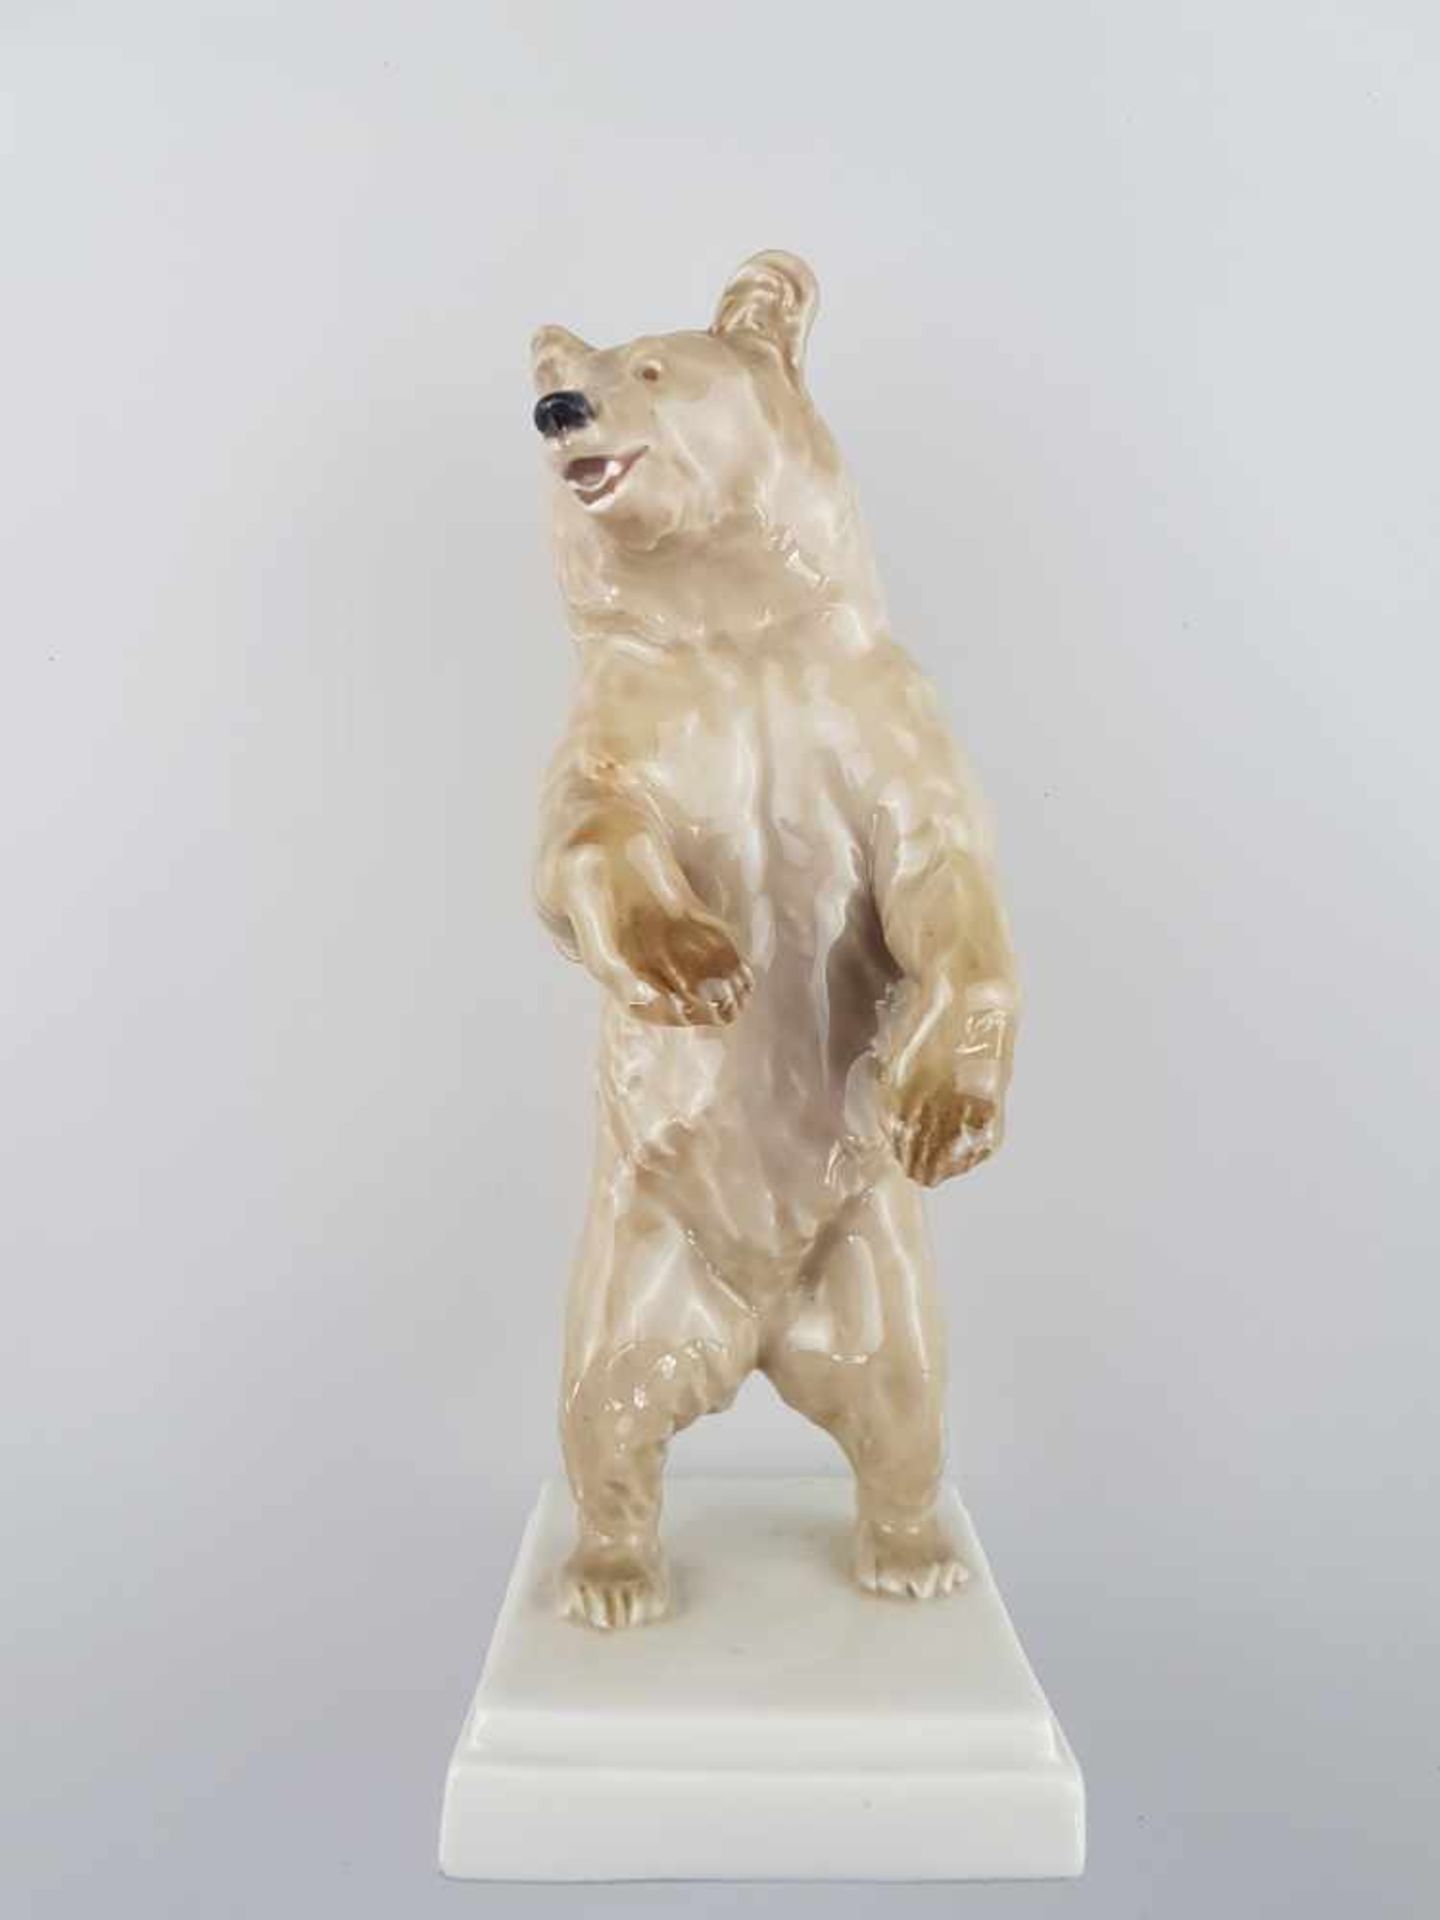 Porzellanfigur "Bär, aufrecht stehend" - Meissen Schwertermarke, Pfeiferzeit 1924-1934, Entwurf (